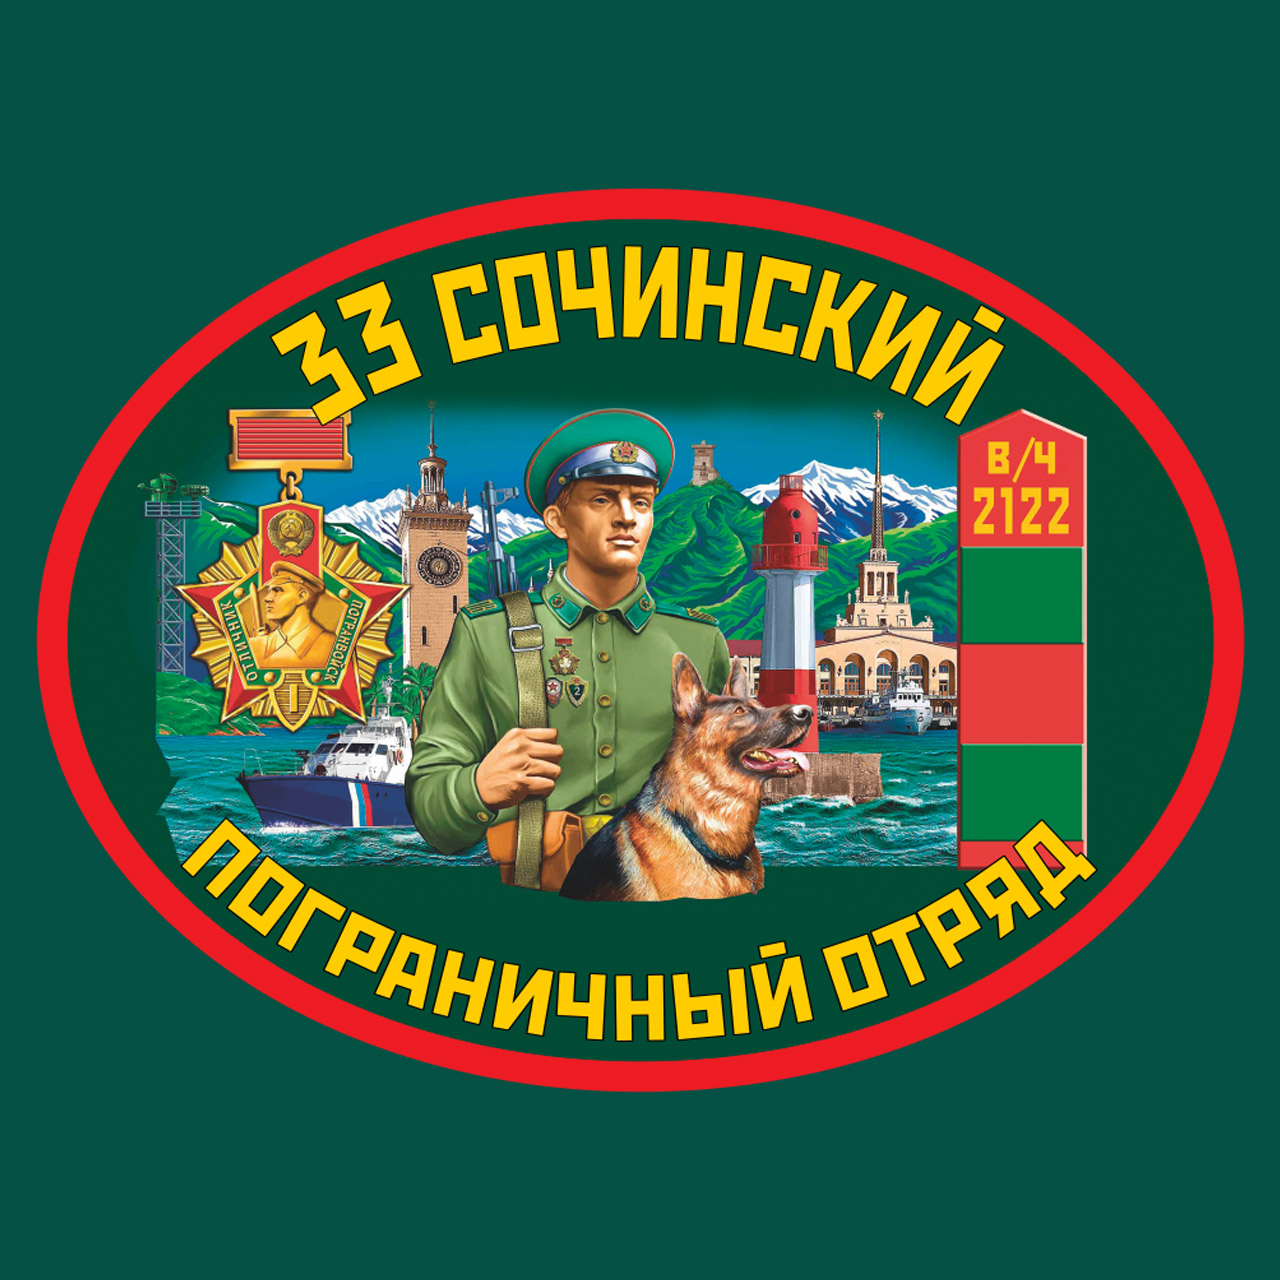 Заказать в интернете термотрансфер 33 Сочинский пограничный отряд